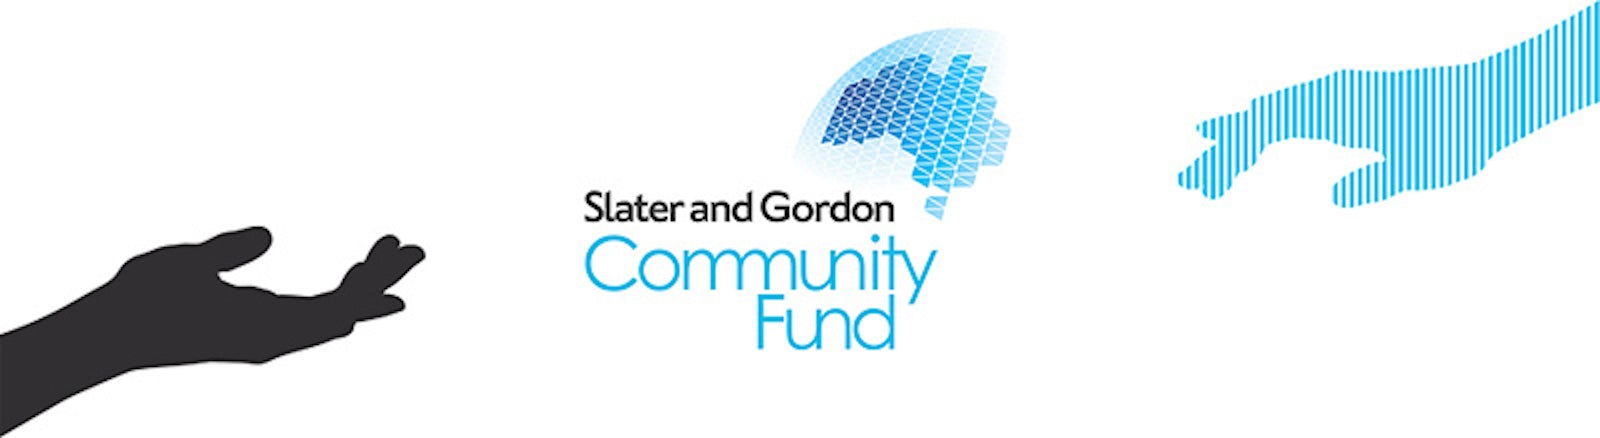 Community Fund November